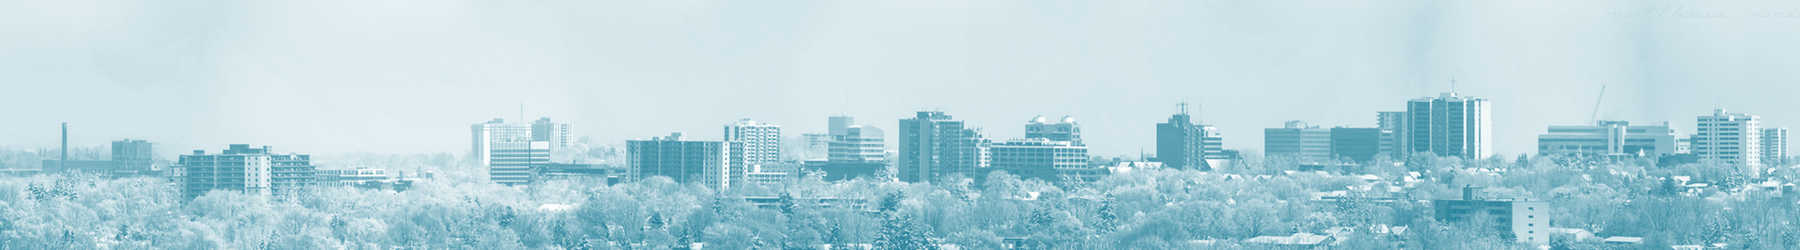 Panorama-Kitchener